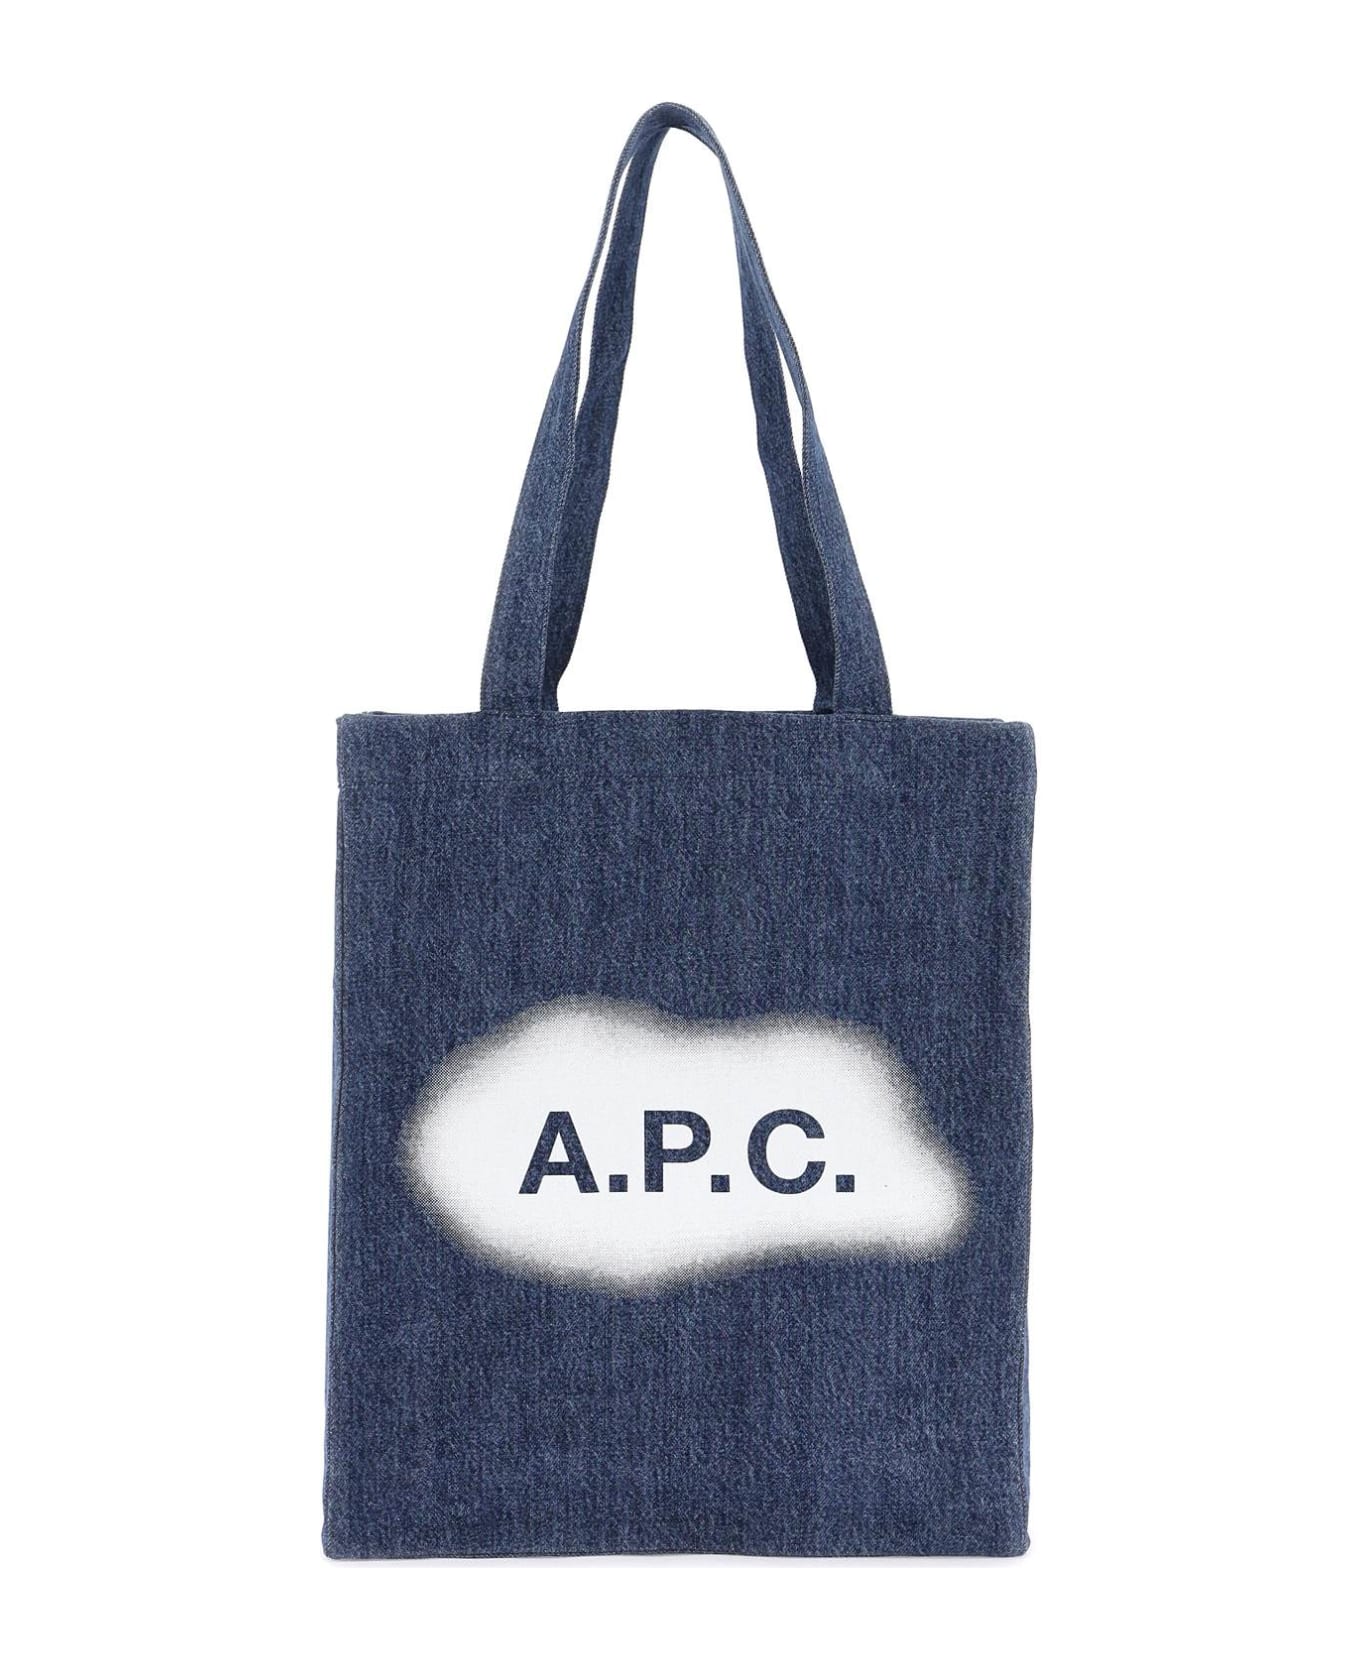 A.P.C. Lou Shopping Bag - Washed indigo